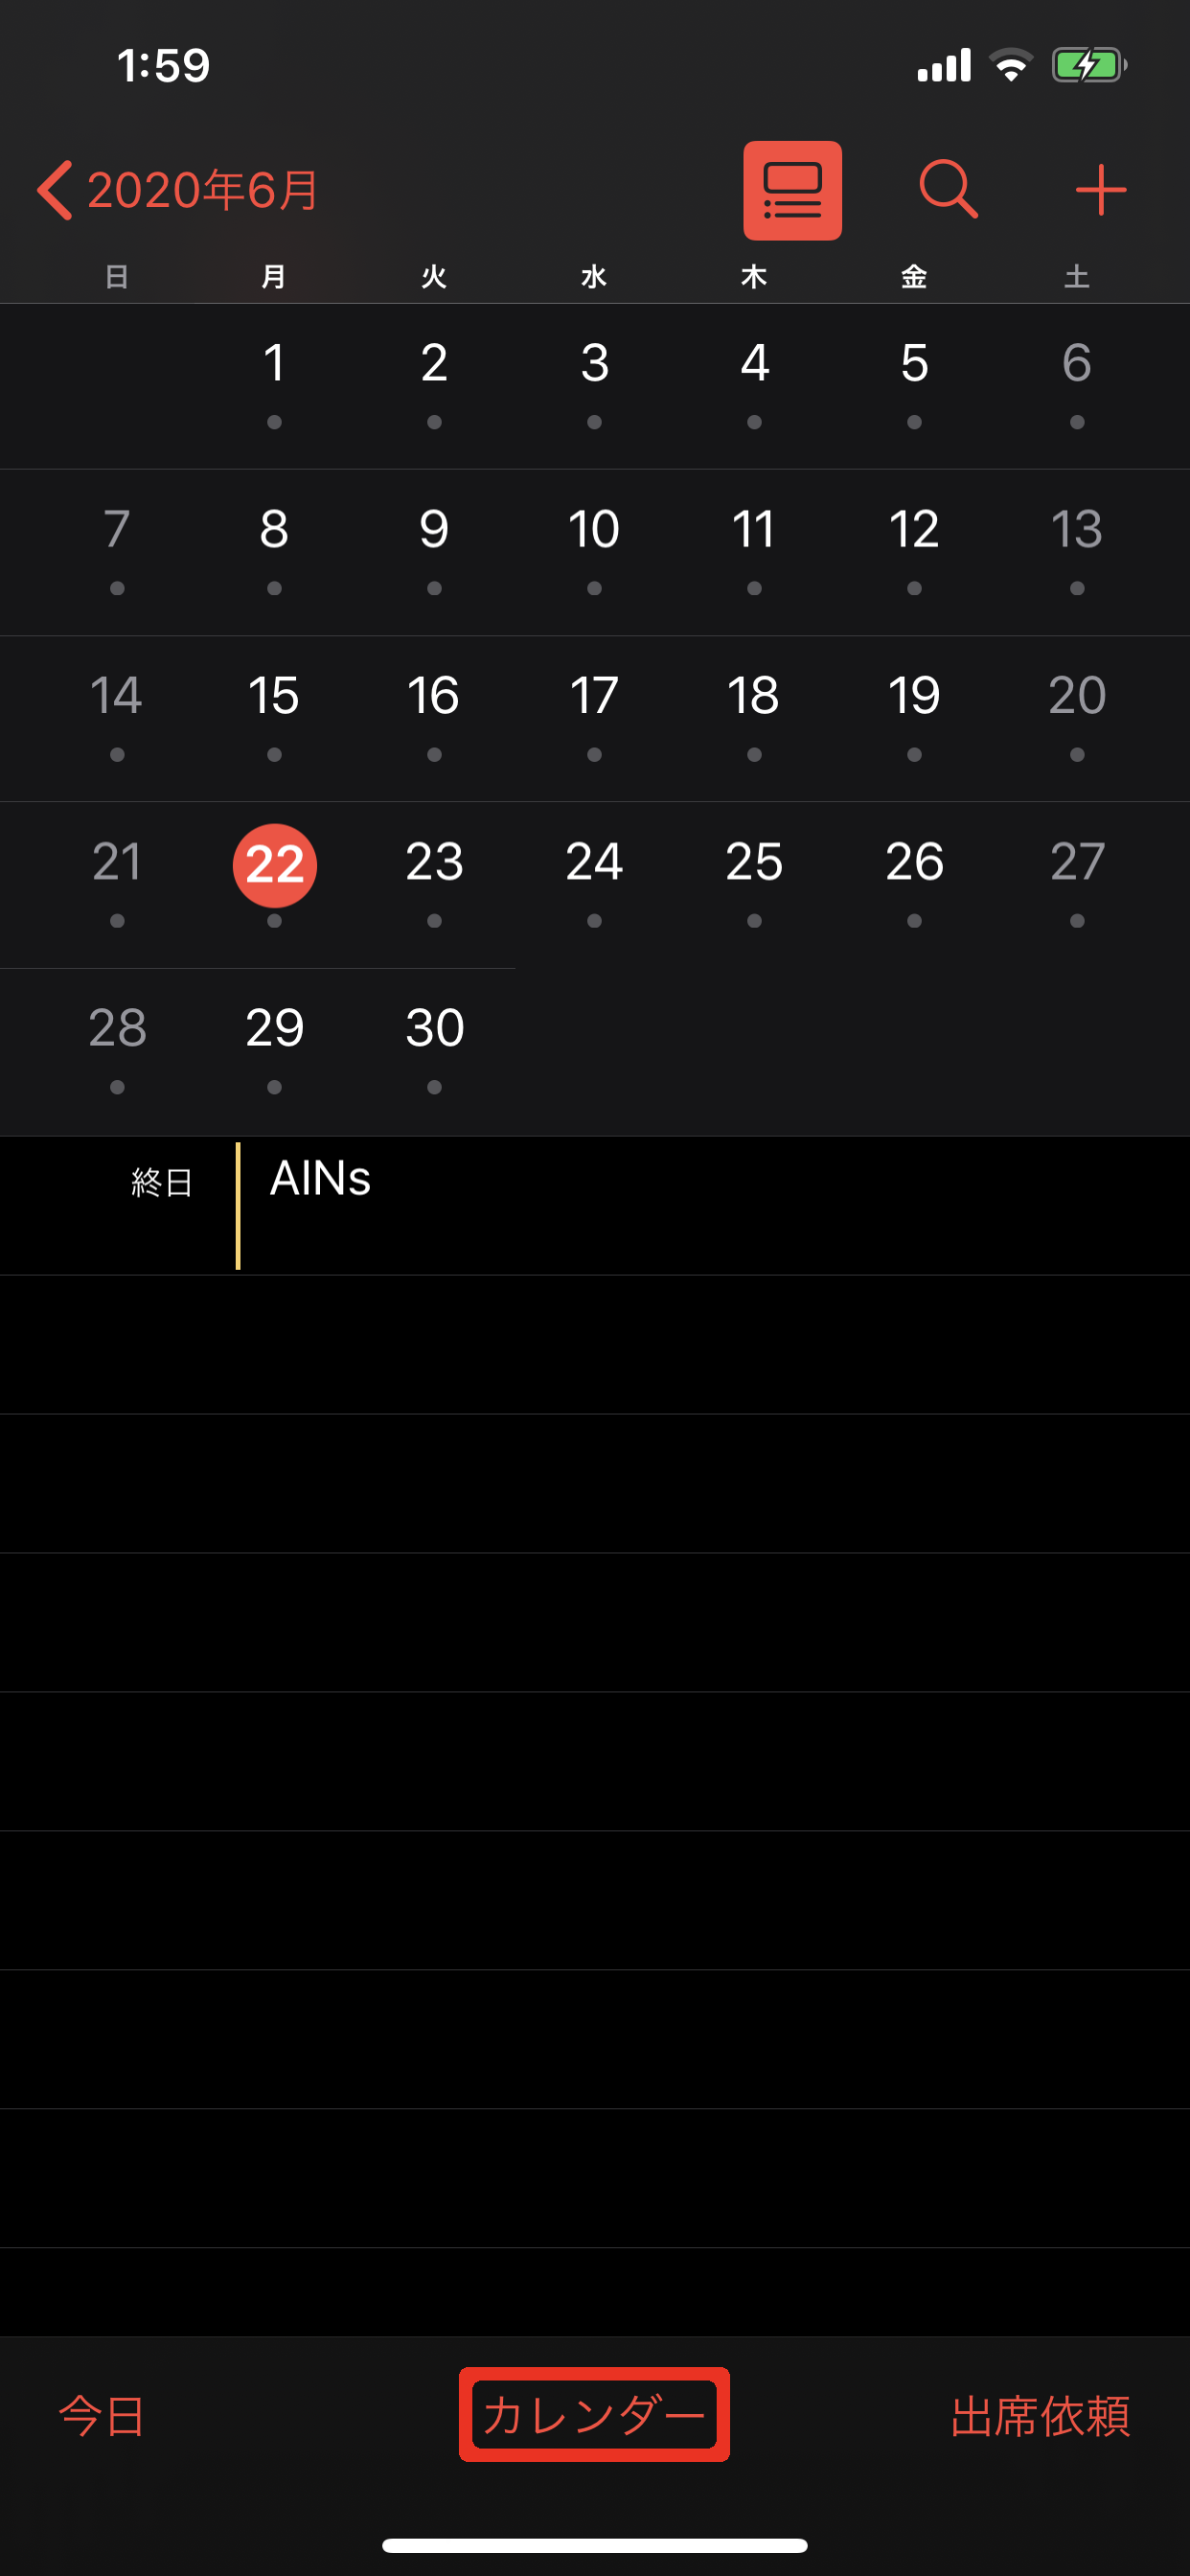 Iphoneのカレンダーでイベントを入力するポイント